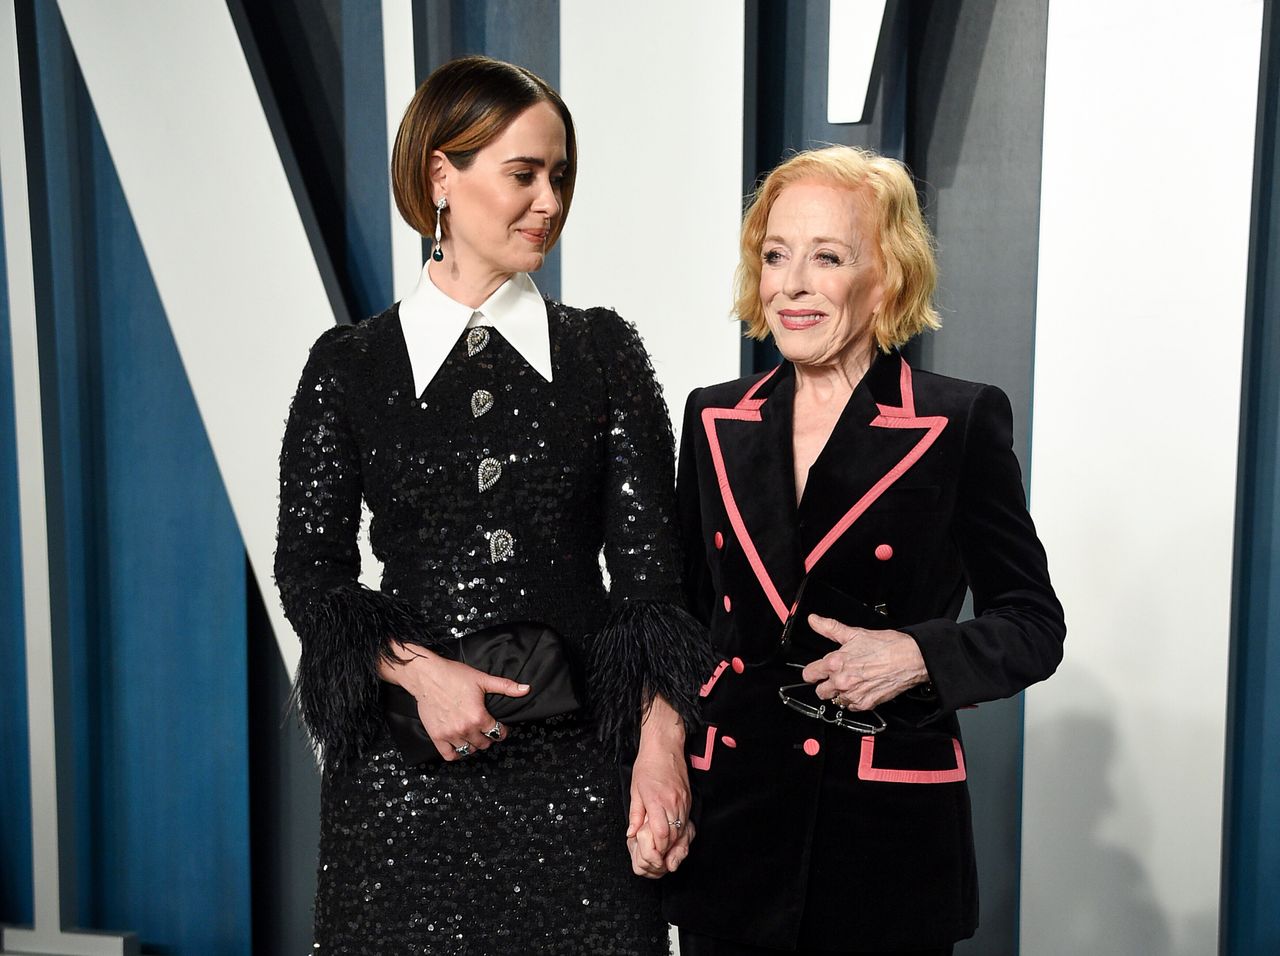 Sarah Paulson and Holland Taylor at the Vanity Fair Oscar party on Feb. 9, 2020.